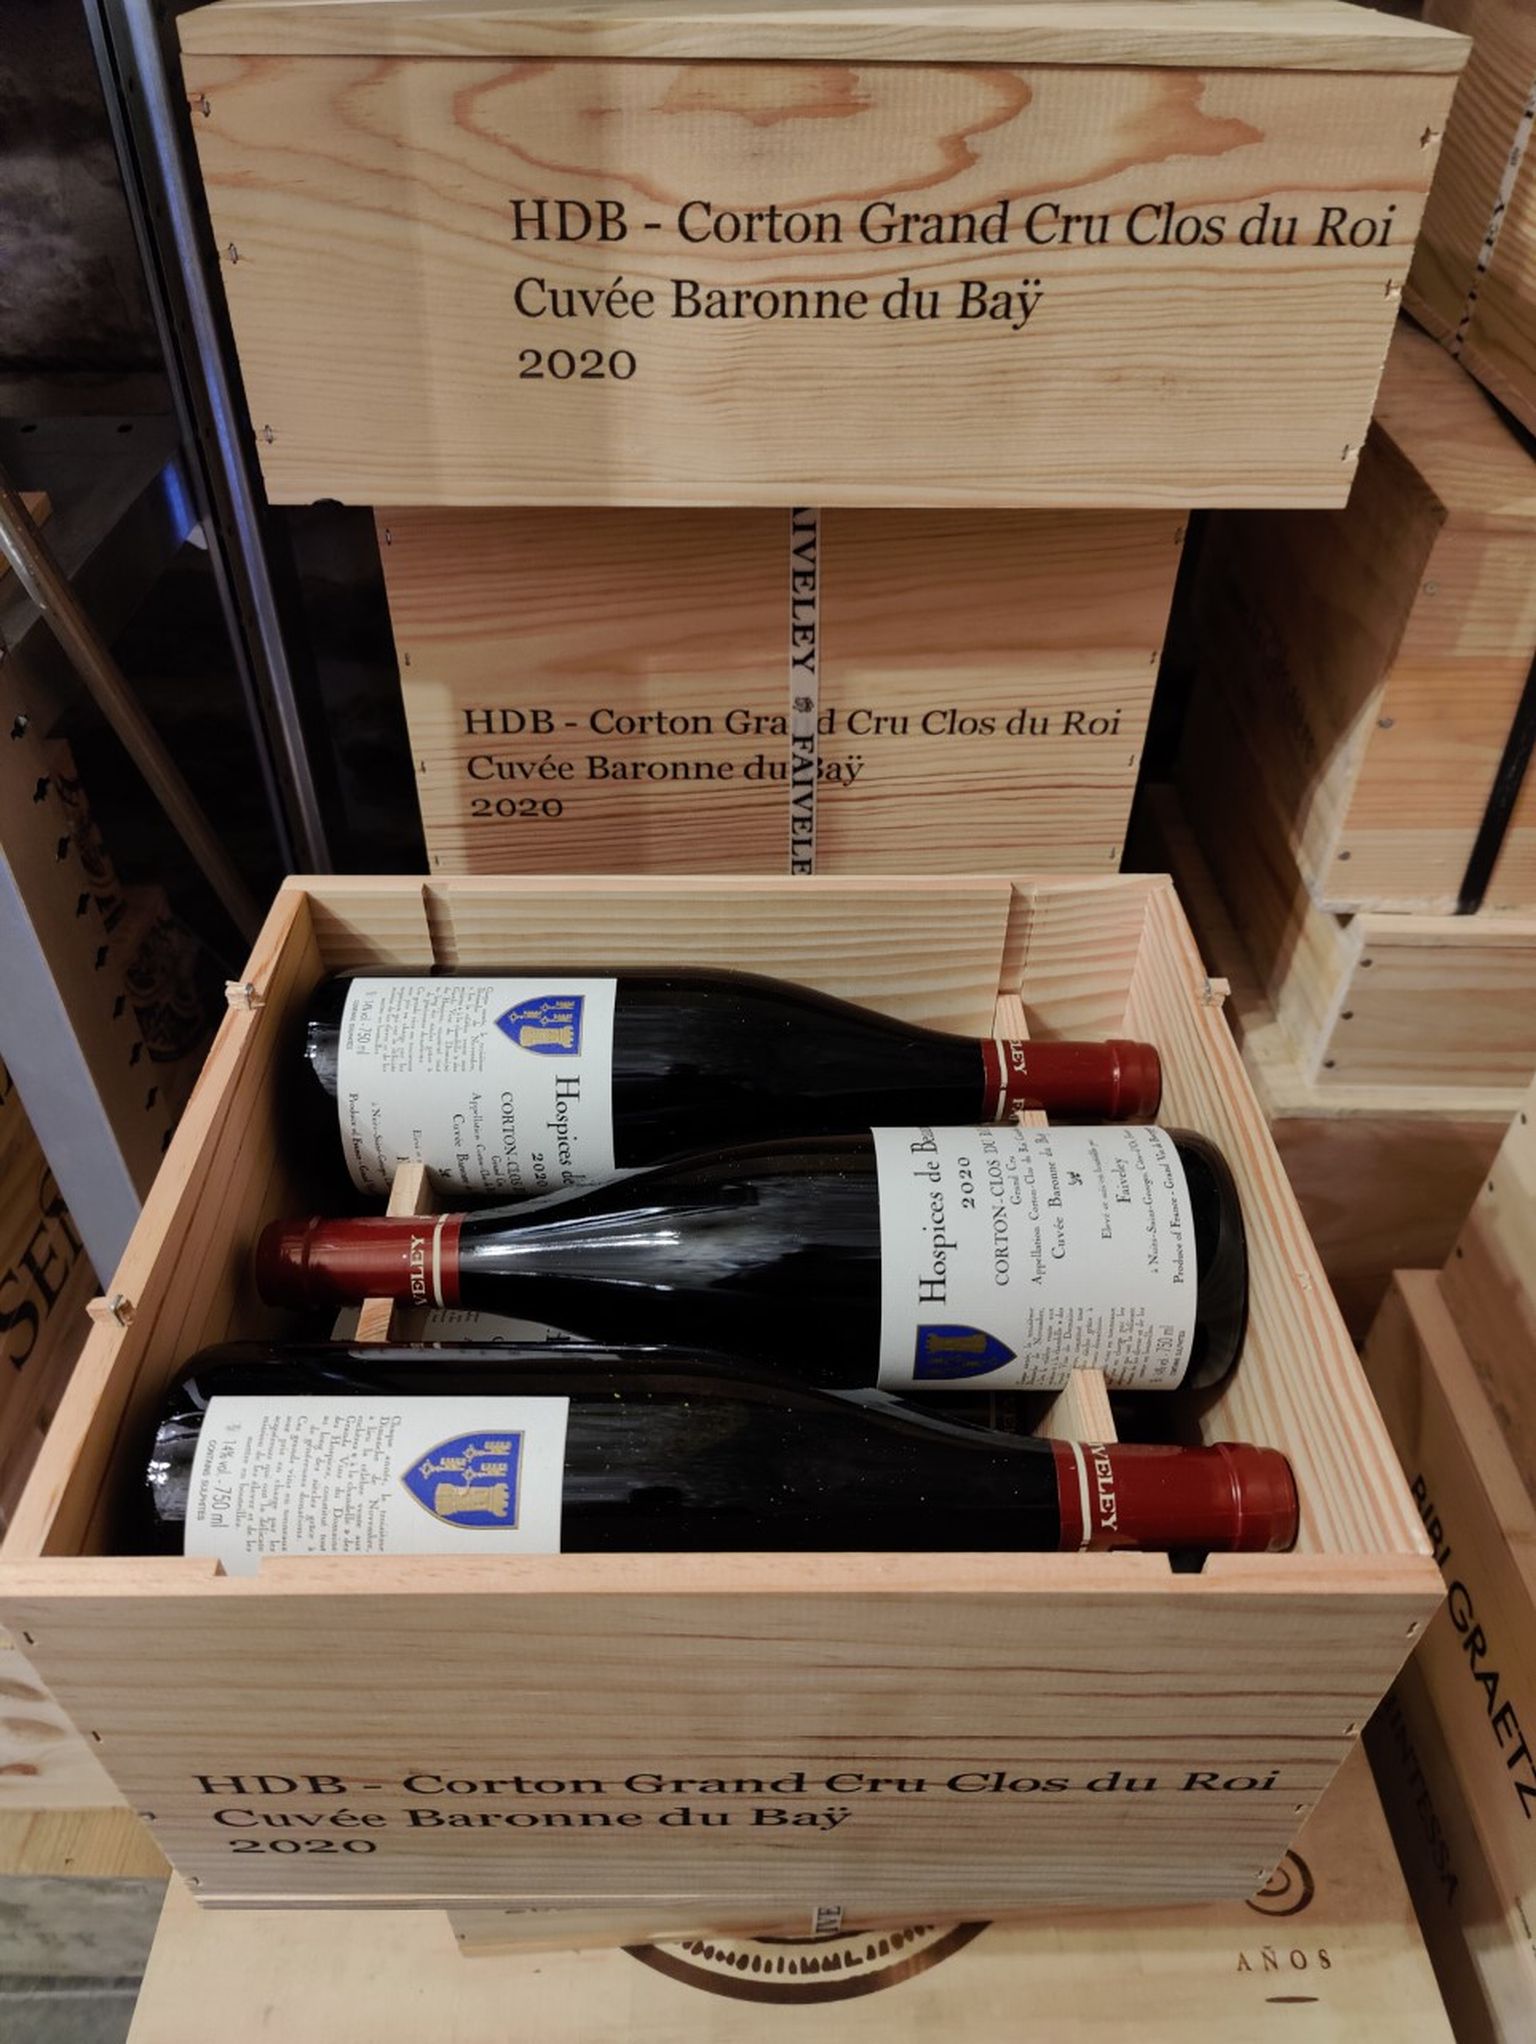 Burgundia vaadioksjonilt 2020. aasta sügisel ostetud vein, mis 2022. aastal pudeldatult keldrisse hoiule jõudis.